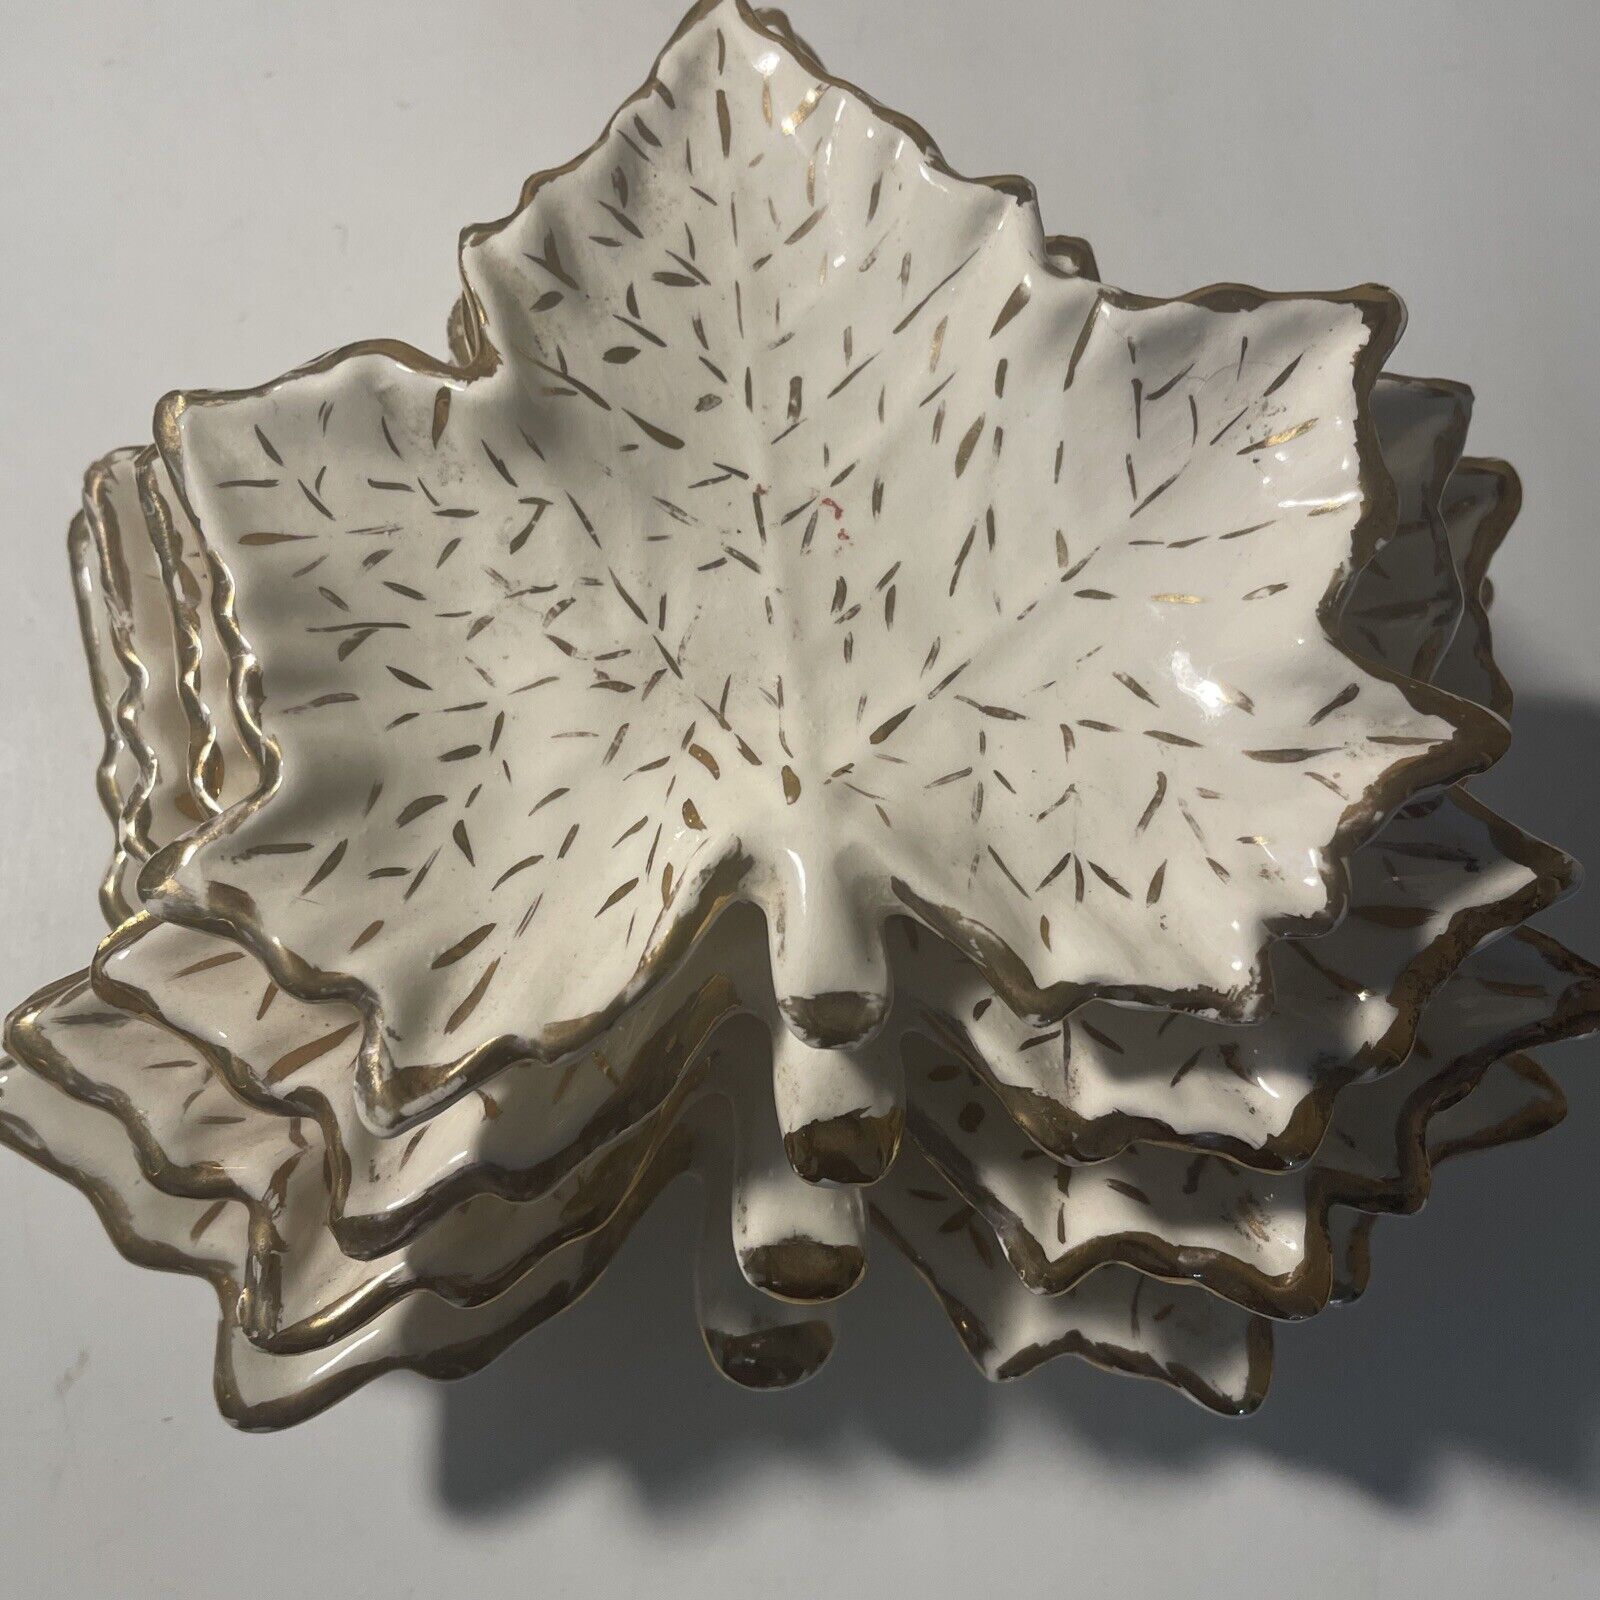 VTG 1959 Porcelain Maple Leaf Nesting Trinket Dish Gold Trim Stacking Set 4